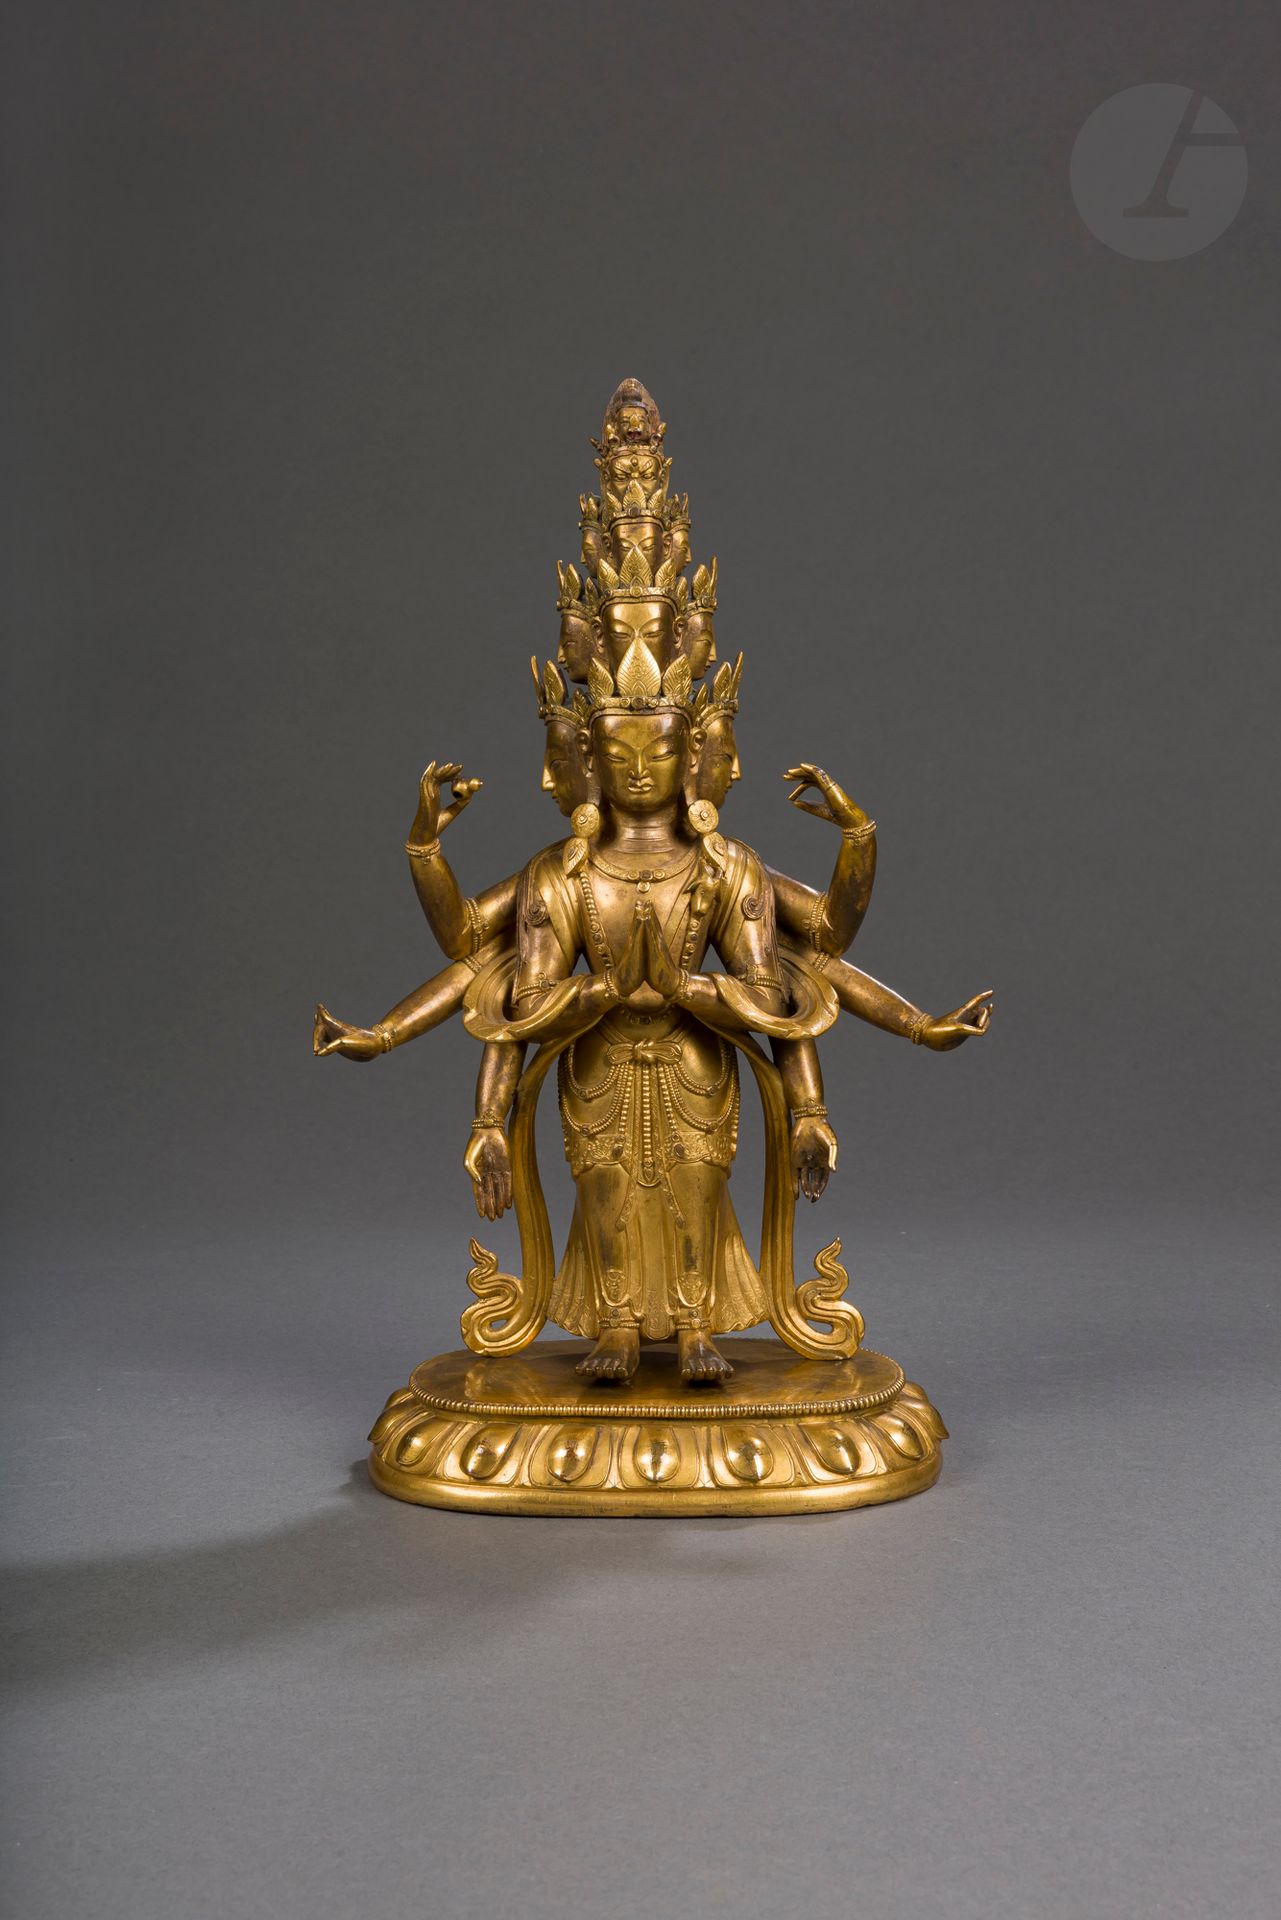 Null 鎏金铜合金观音菩萨像，莲花状底座，西藏，18-19世纪
描绘了八条手臂，表示八个方向，十一个头，也表示八个方向以及上、中、下三个垂直分界。头部呈金字塔&hellip;